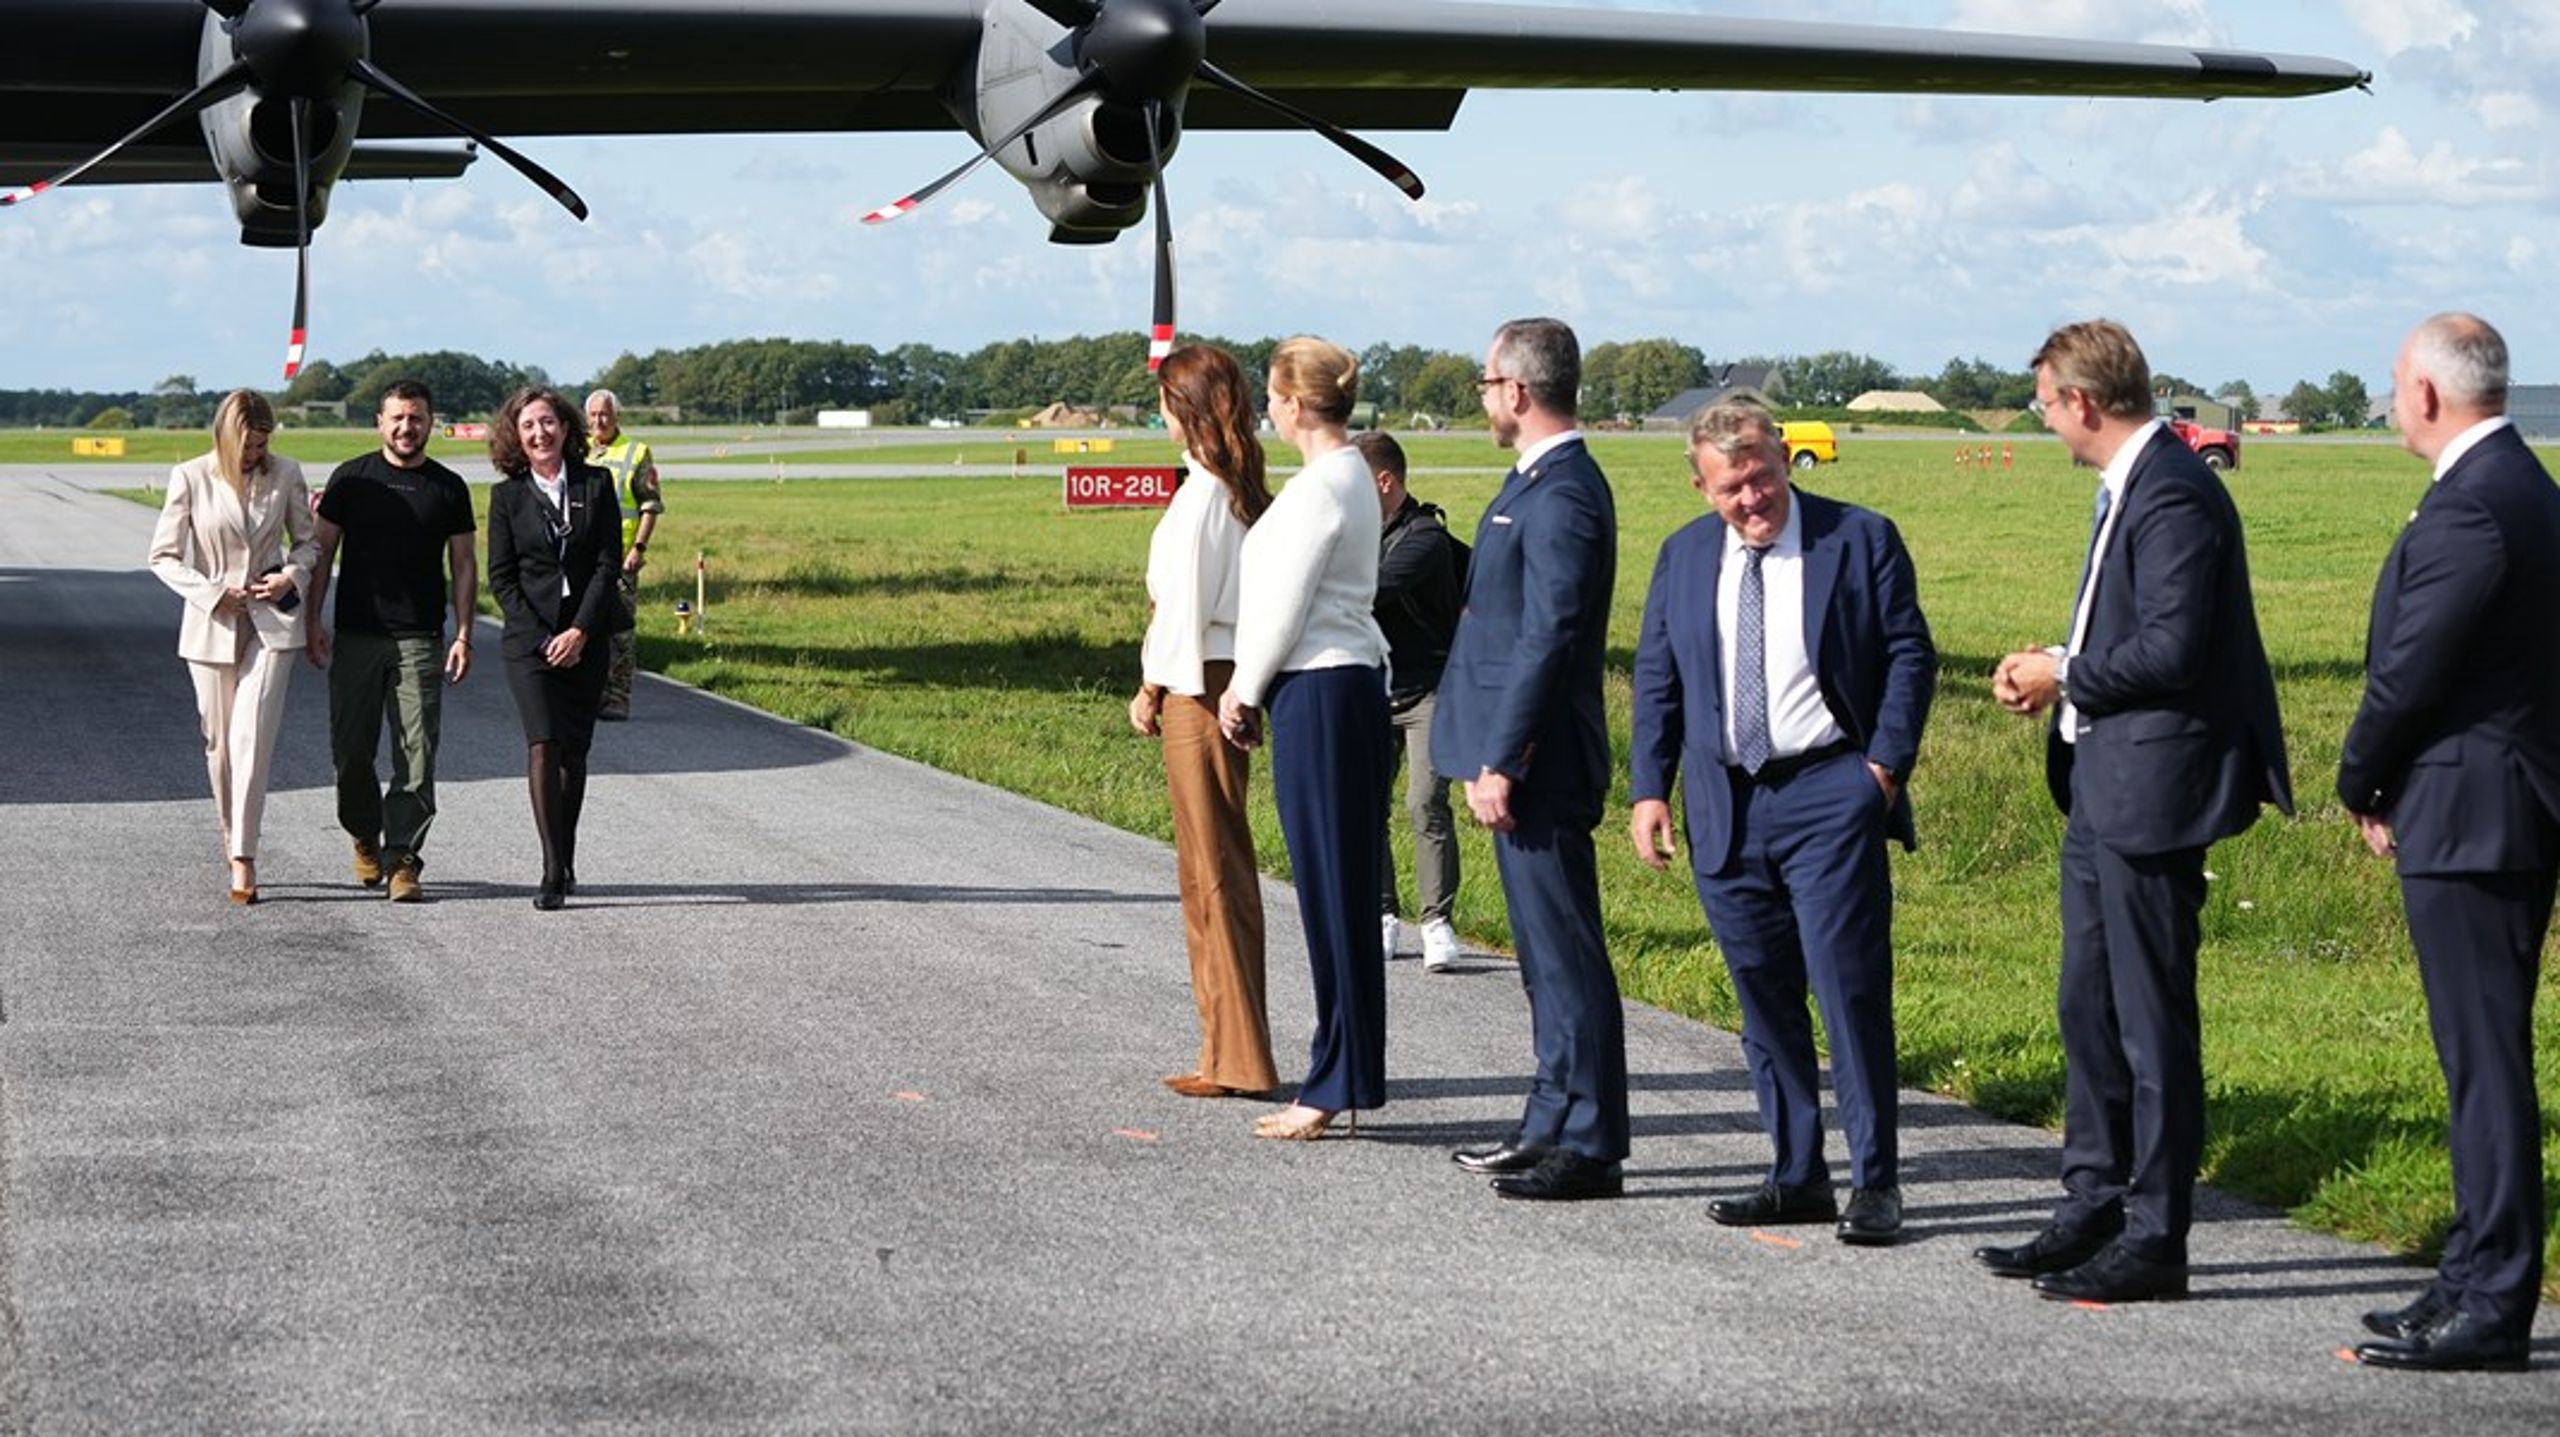 "Ambassadekontoret er et vigtigt symbol på det meget tætte partnerskab, der har udviklet sig mellem Danmark og Mykolaiv," udtaler udenrigsminister Lars Løkke Rasmussen.